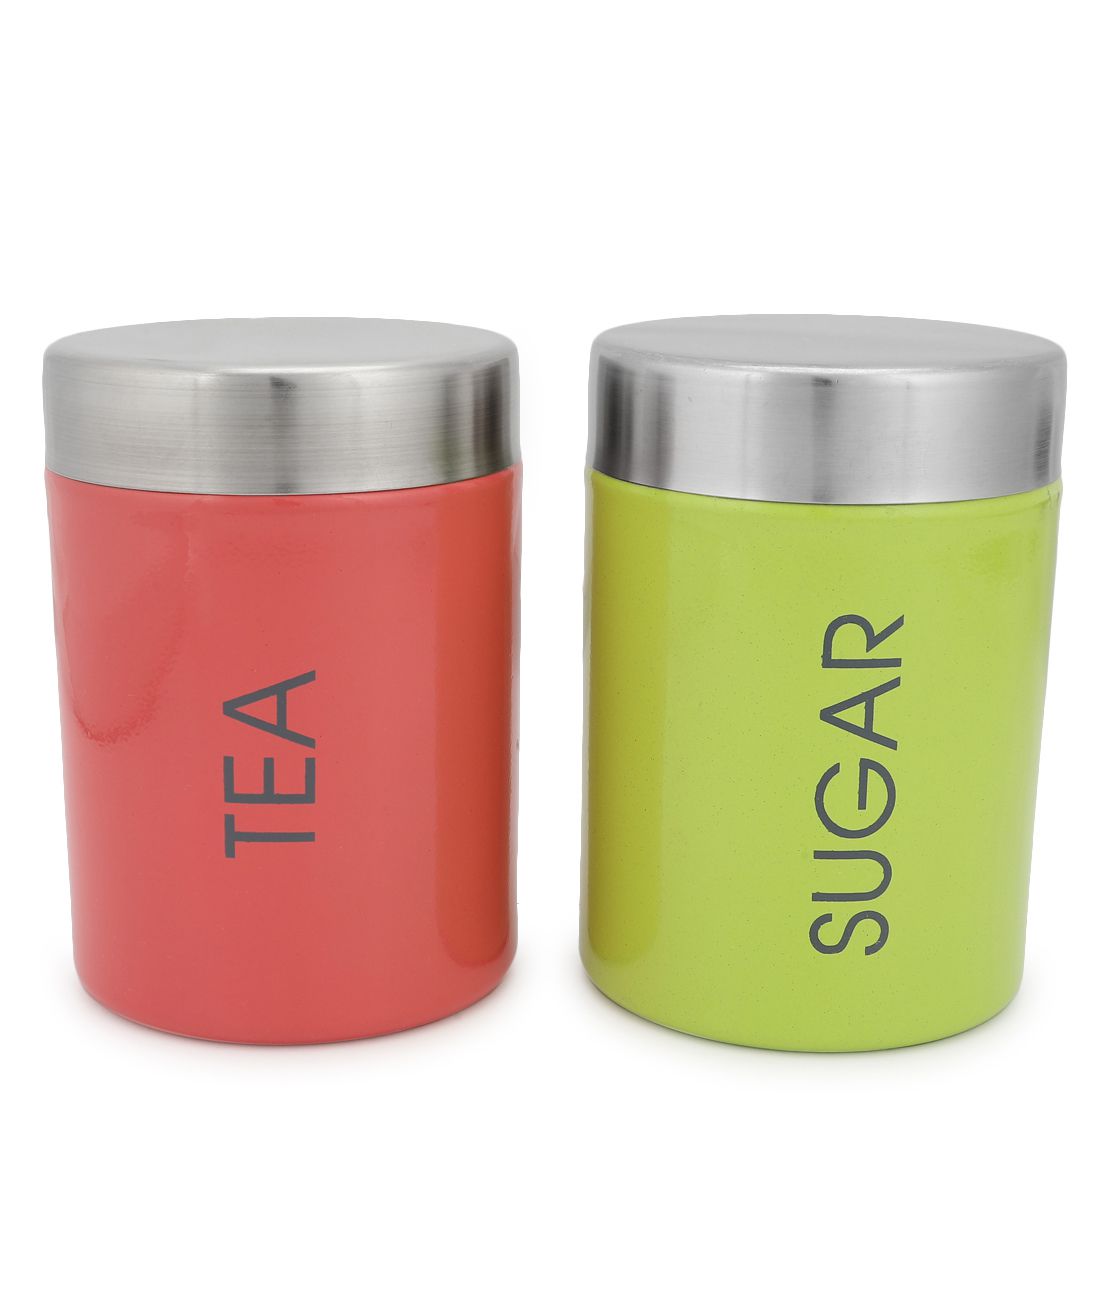     			HOMETALES - Colorful Tea Sugar Steel Multicolor Tea/Coffee/Sugar Container ( Set of 2 )